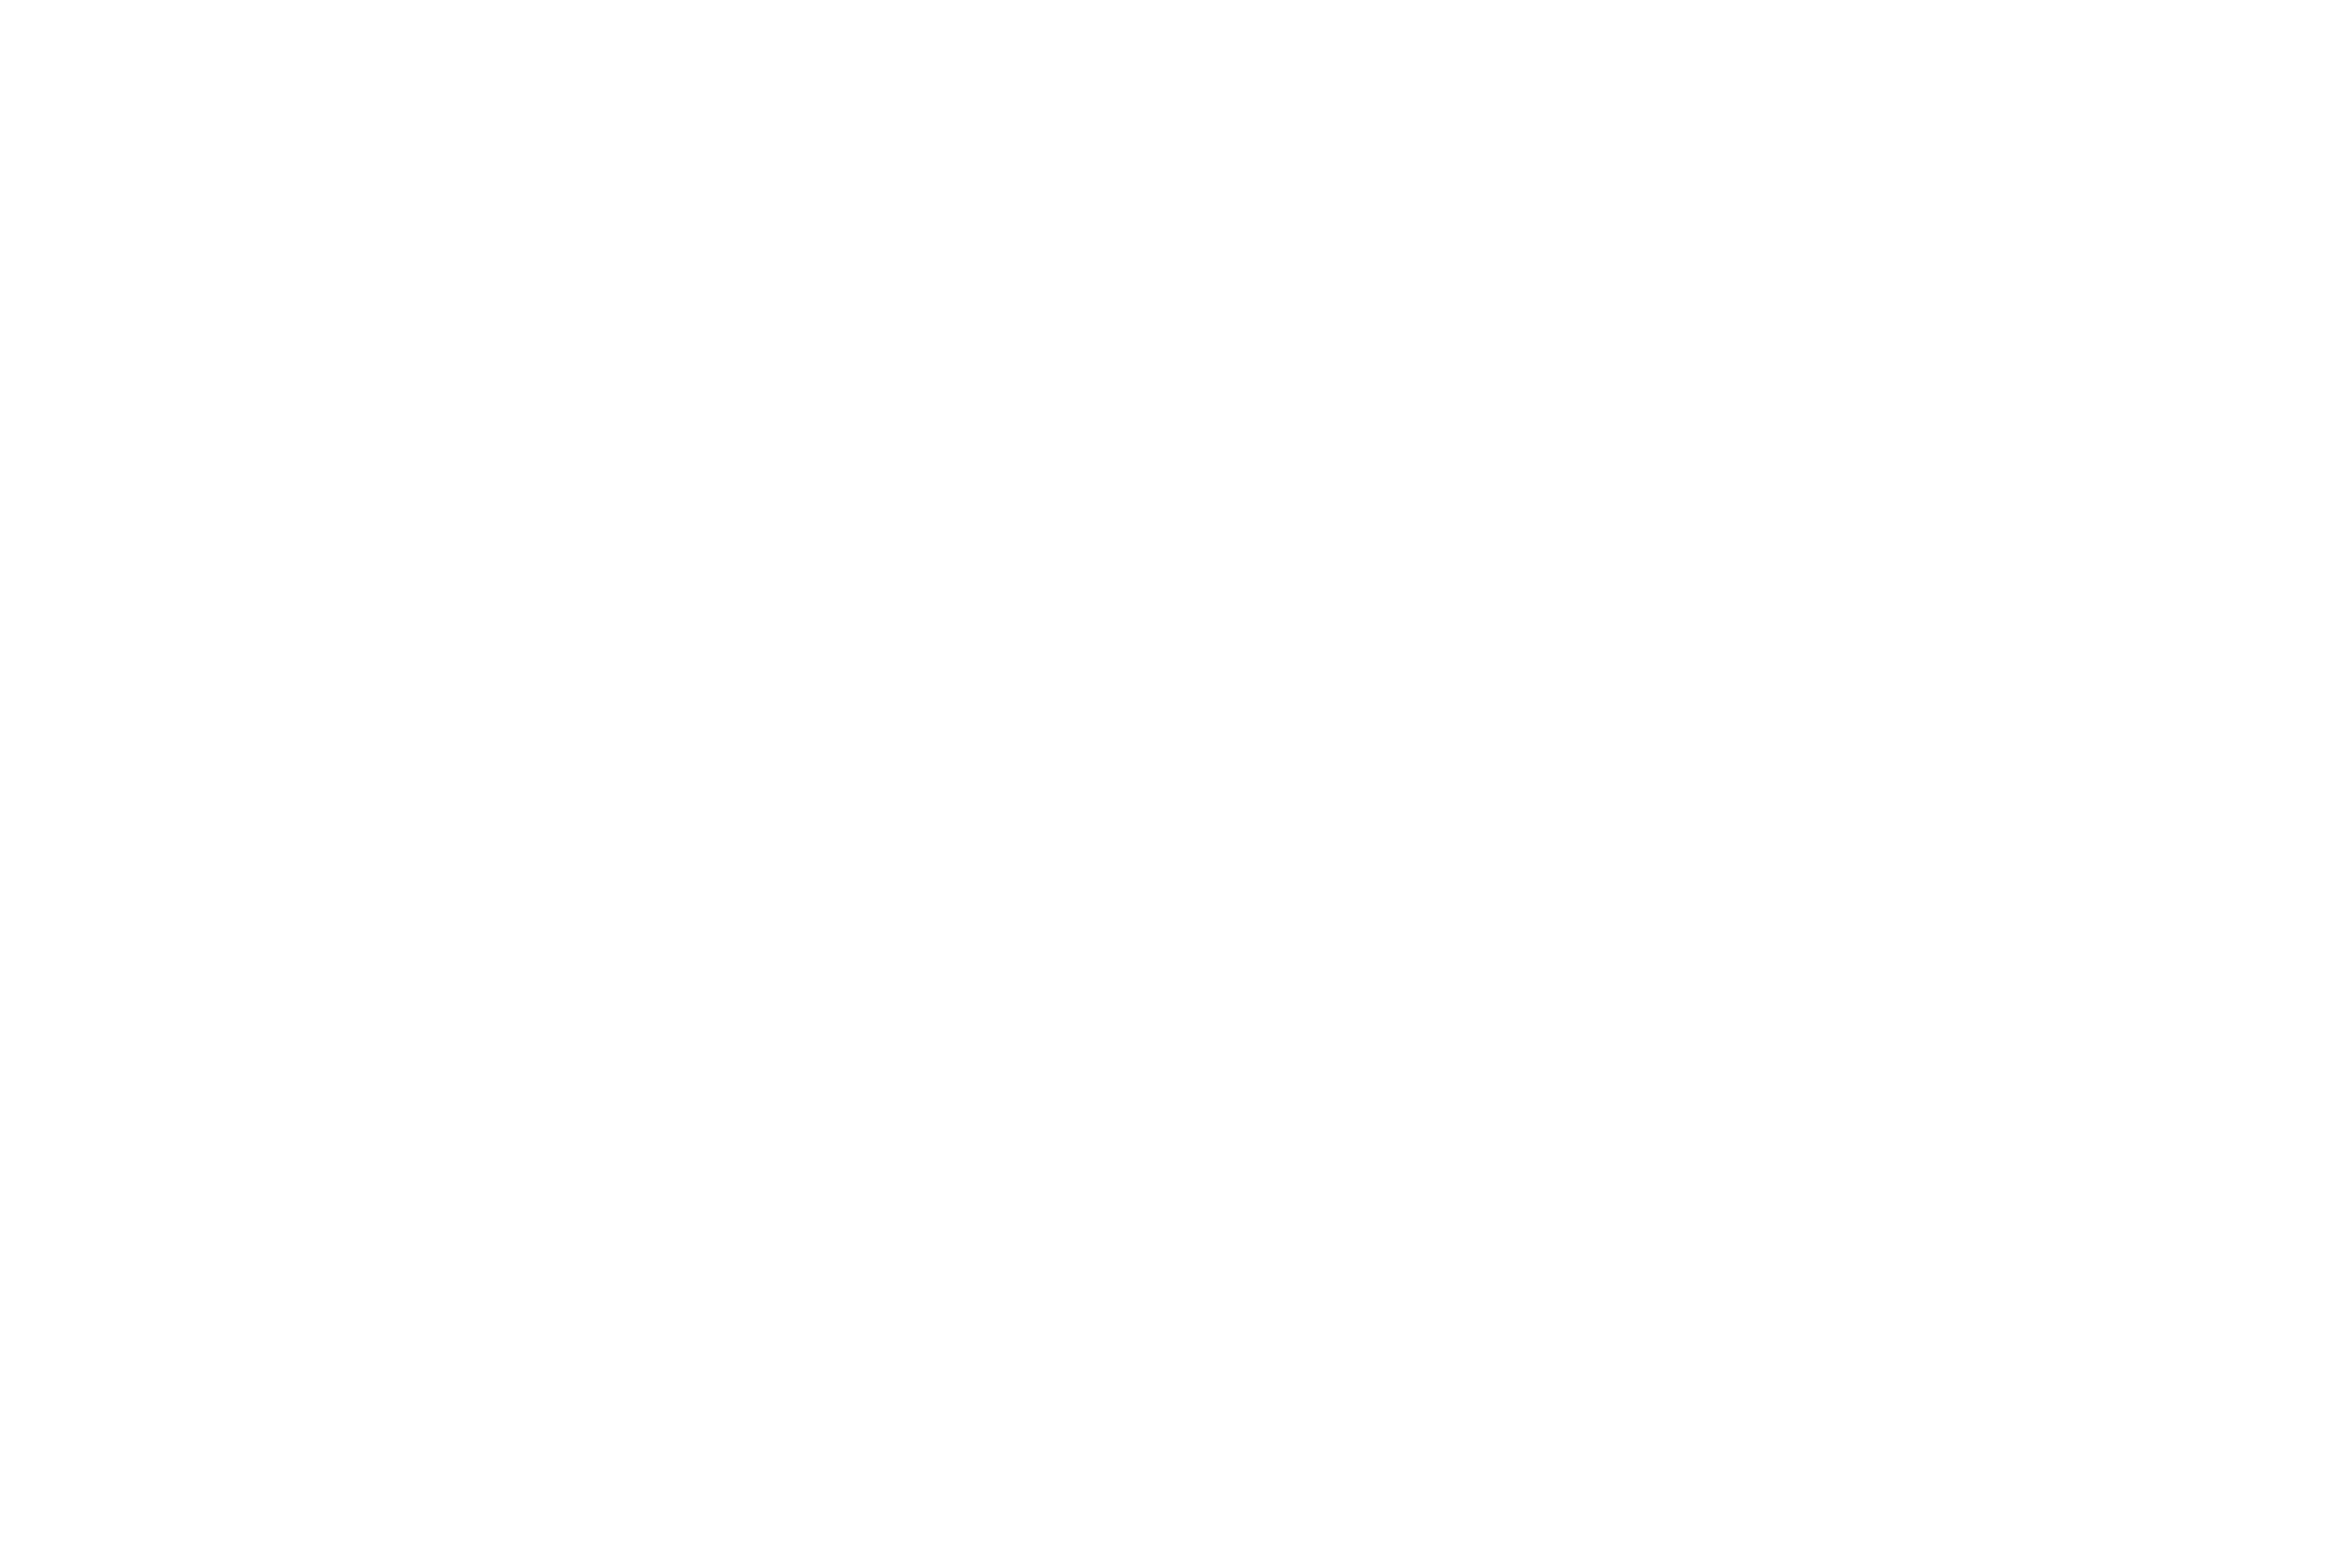 INNR:SLF